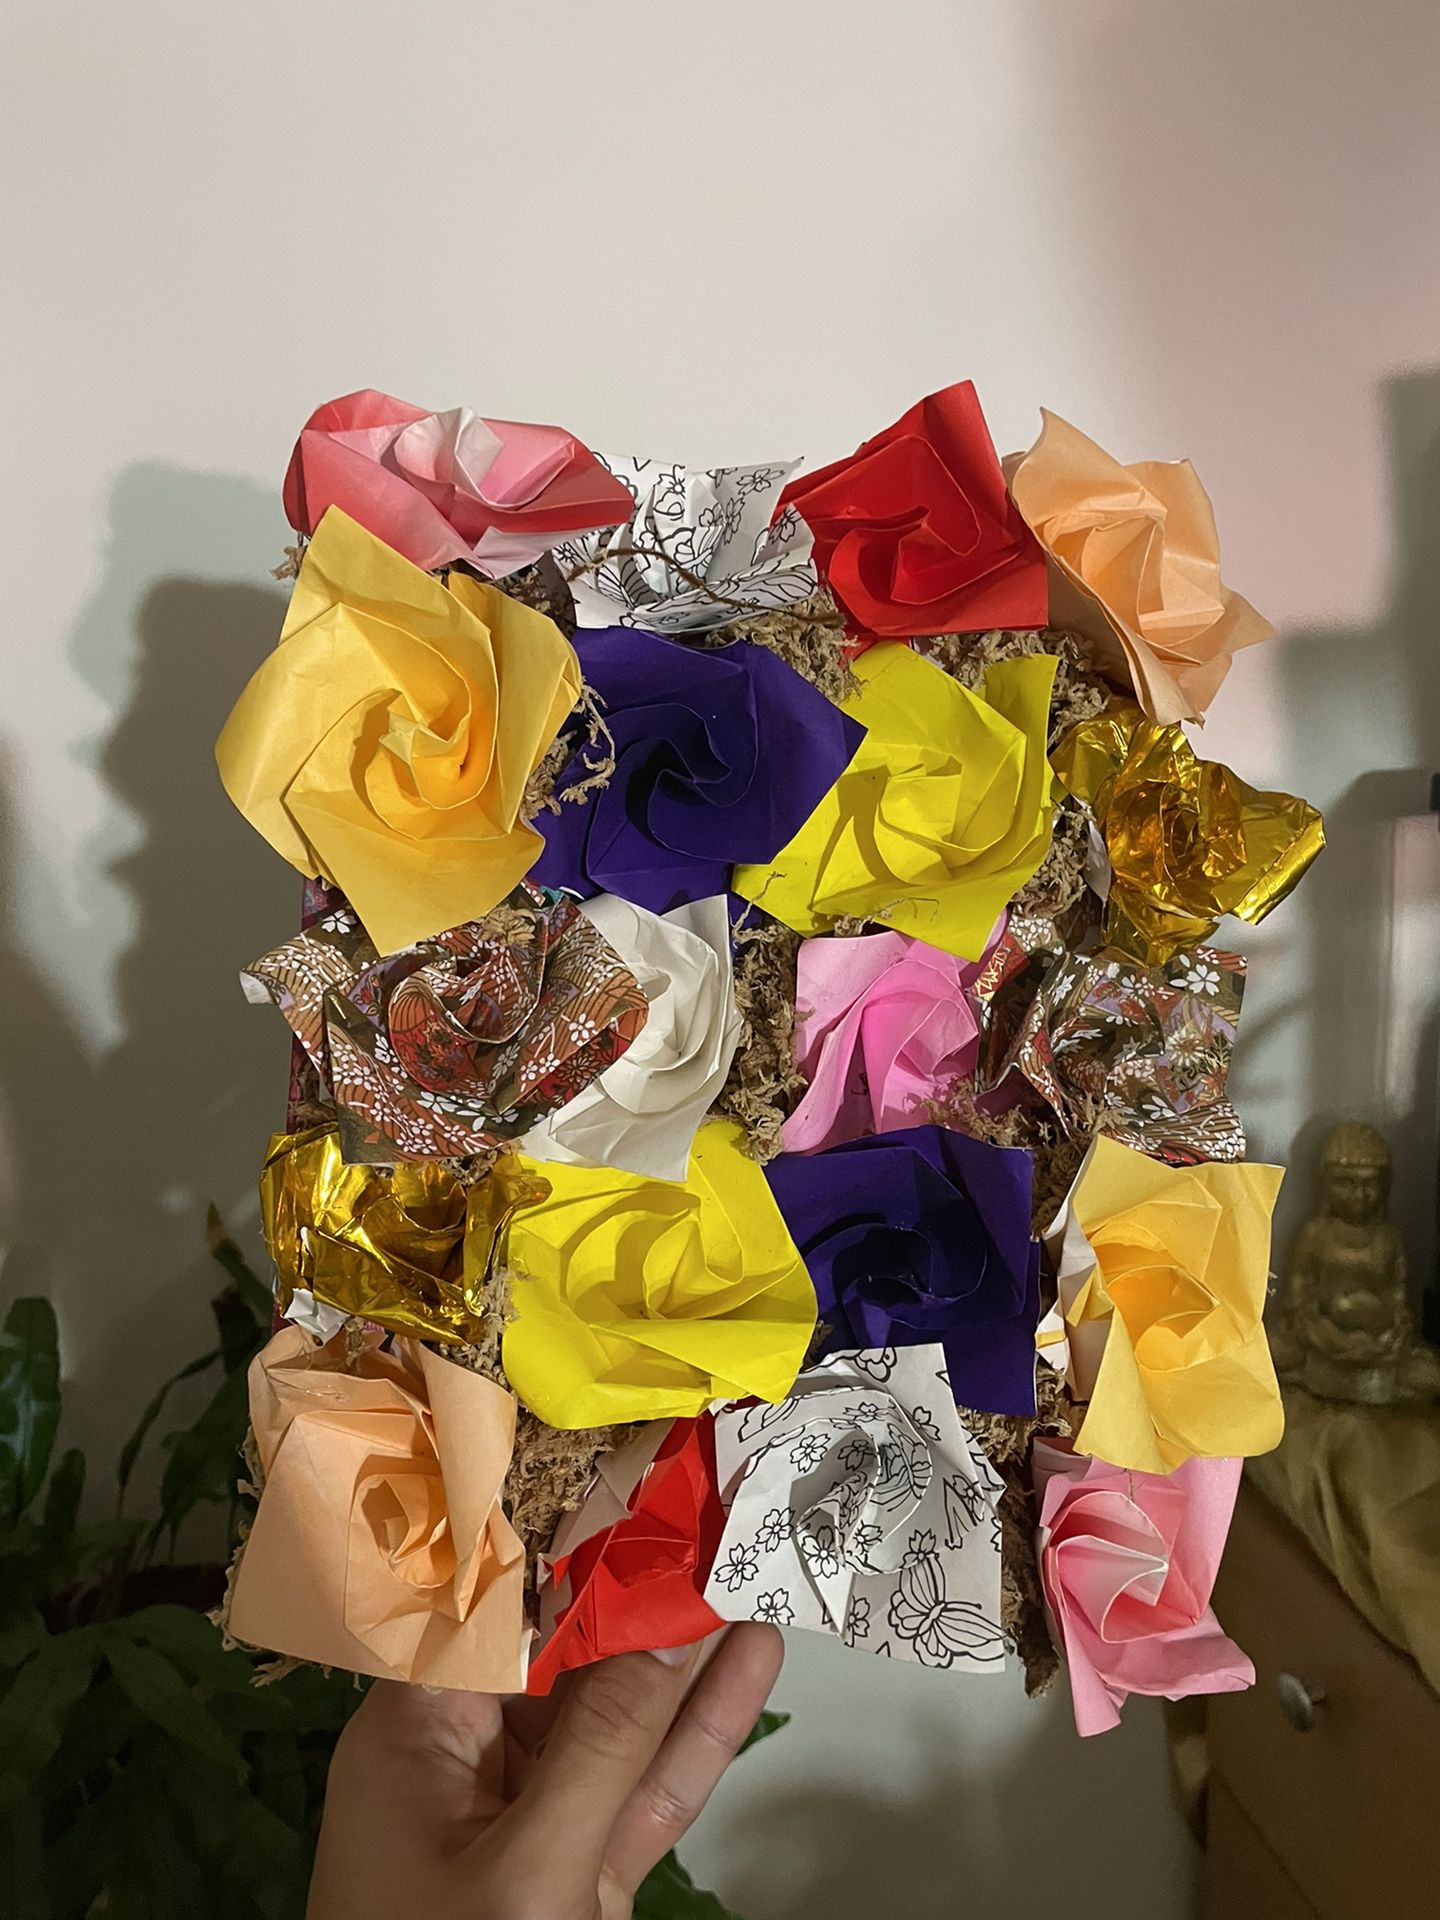 Handmade Origami Rose Flower Art Frame.